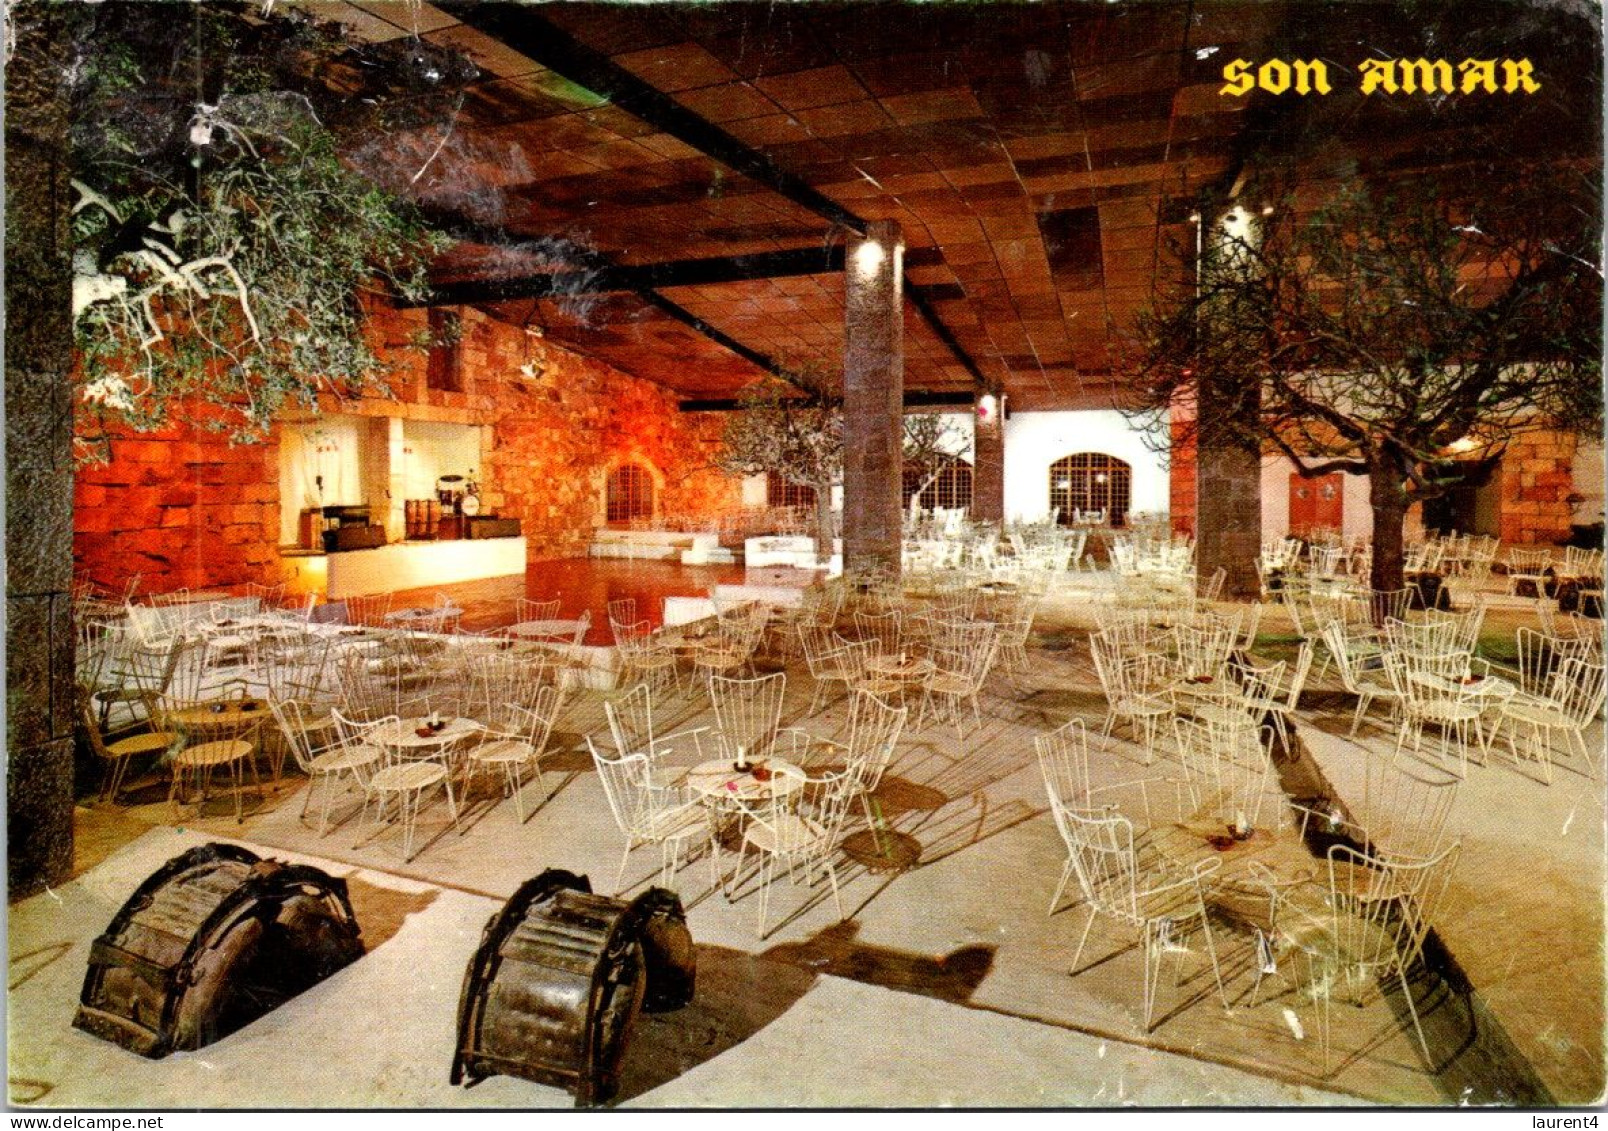 2-5-2024 (3 Z 38) Spain - Son Amar Barbecue Restaurant - Hotel's & Restaurants